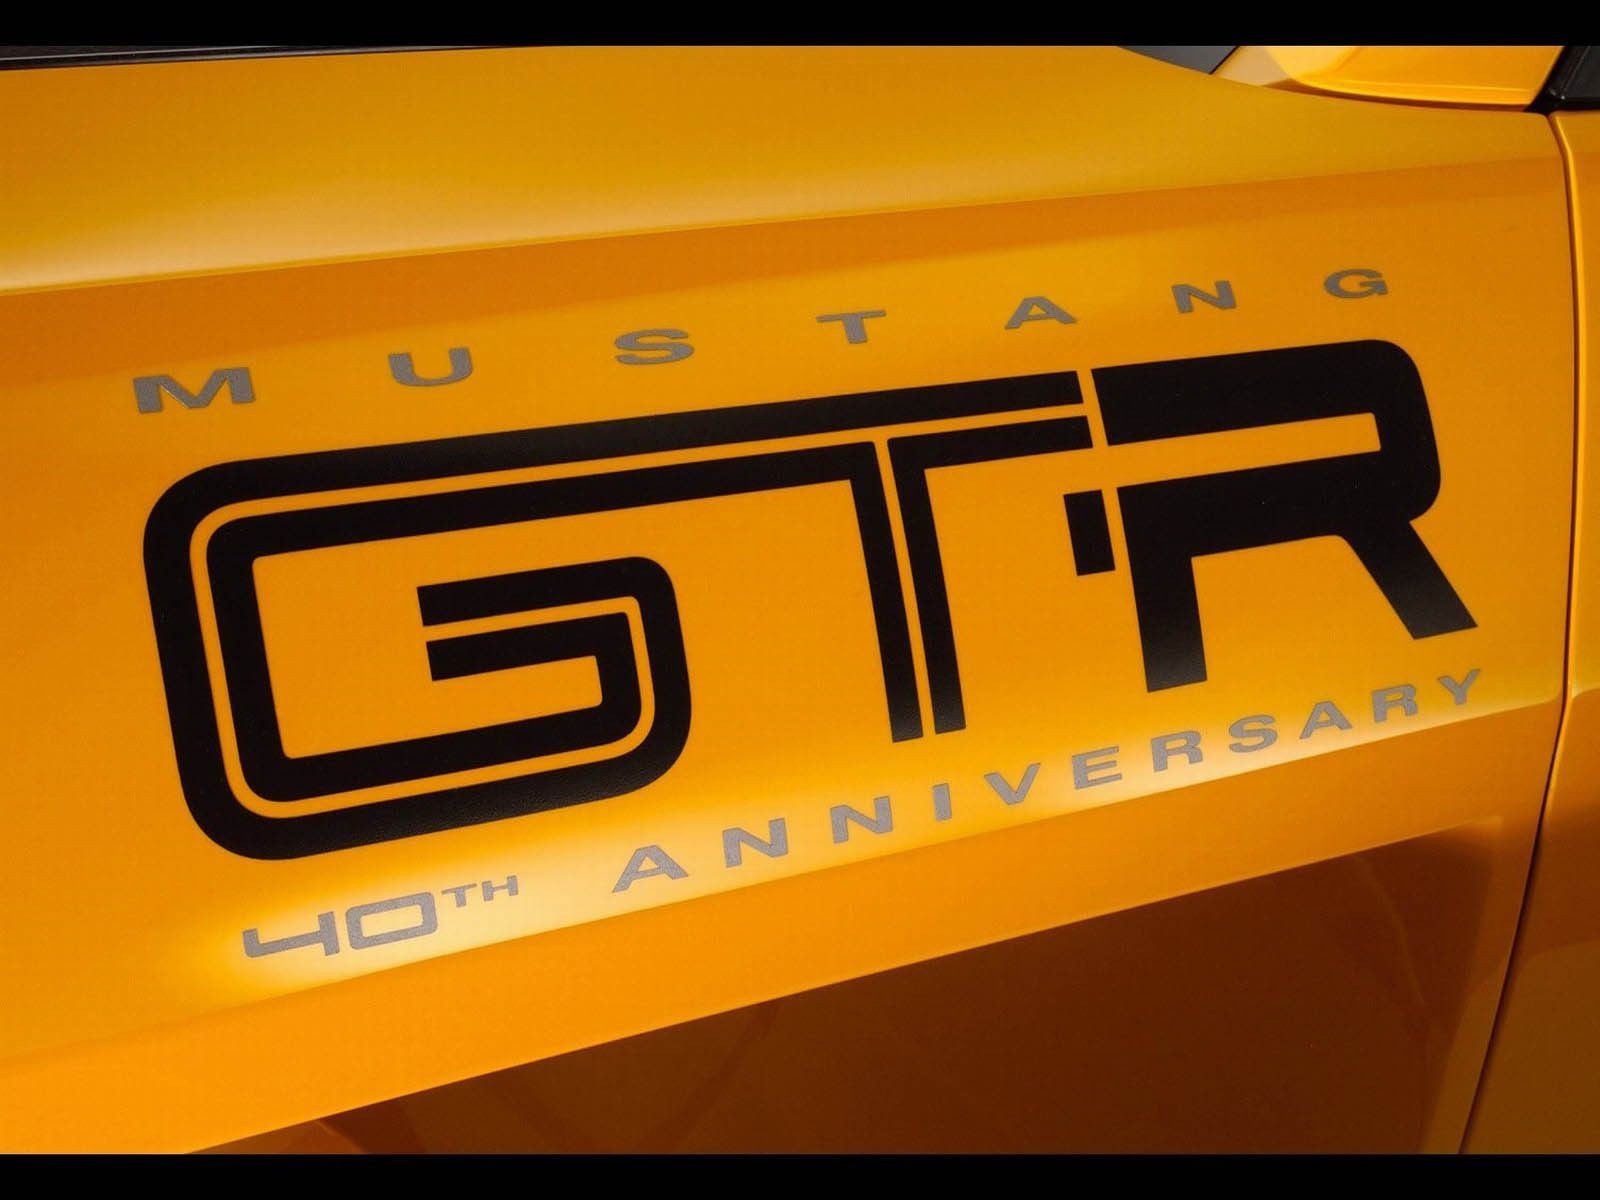 2005 Ford Mustang GTR